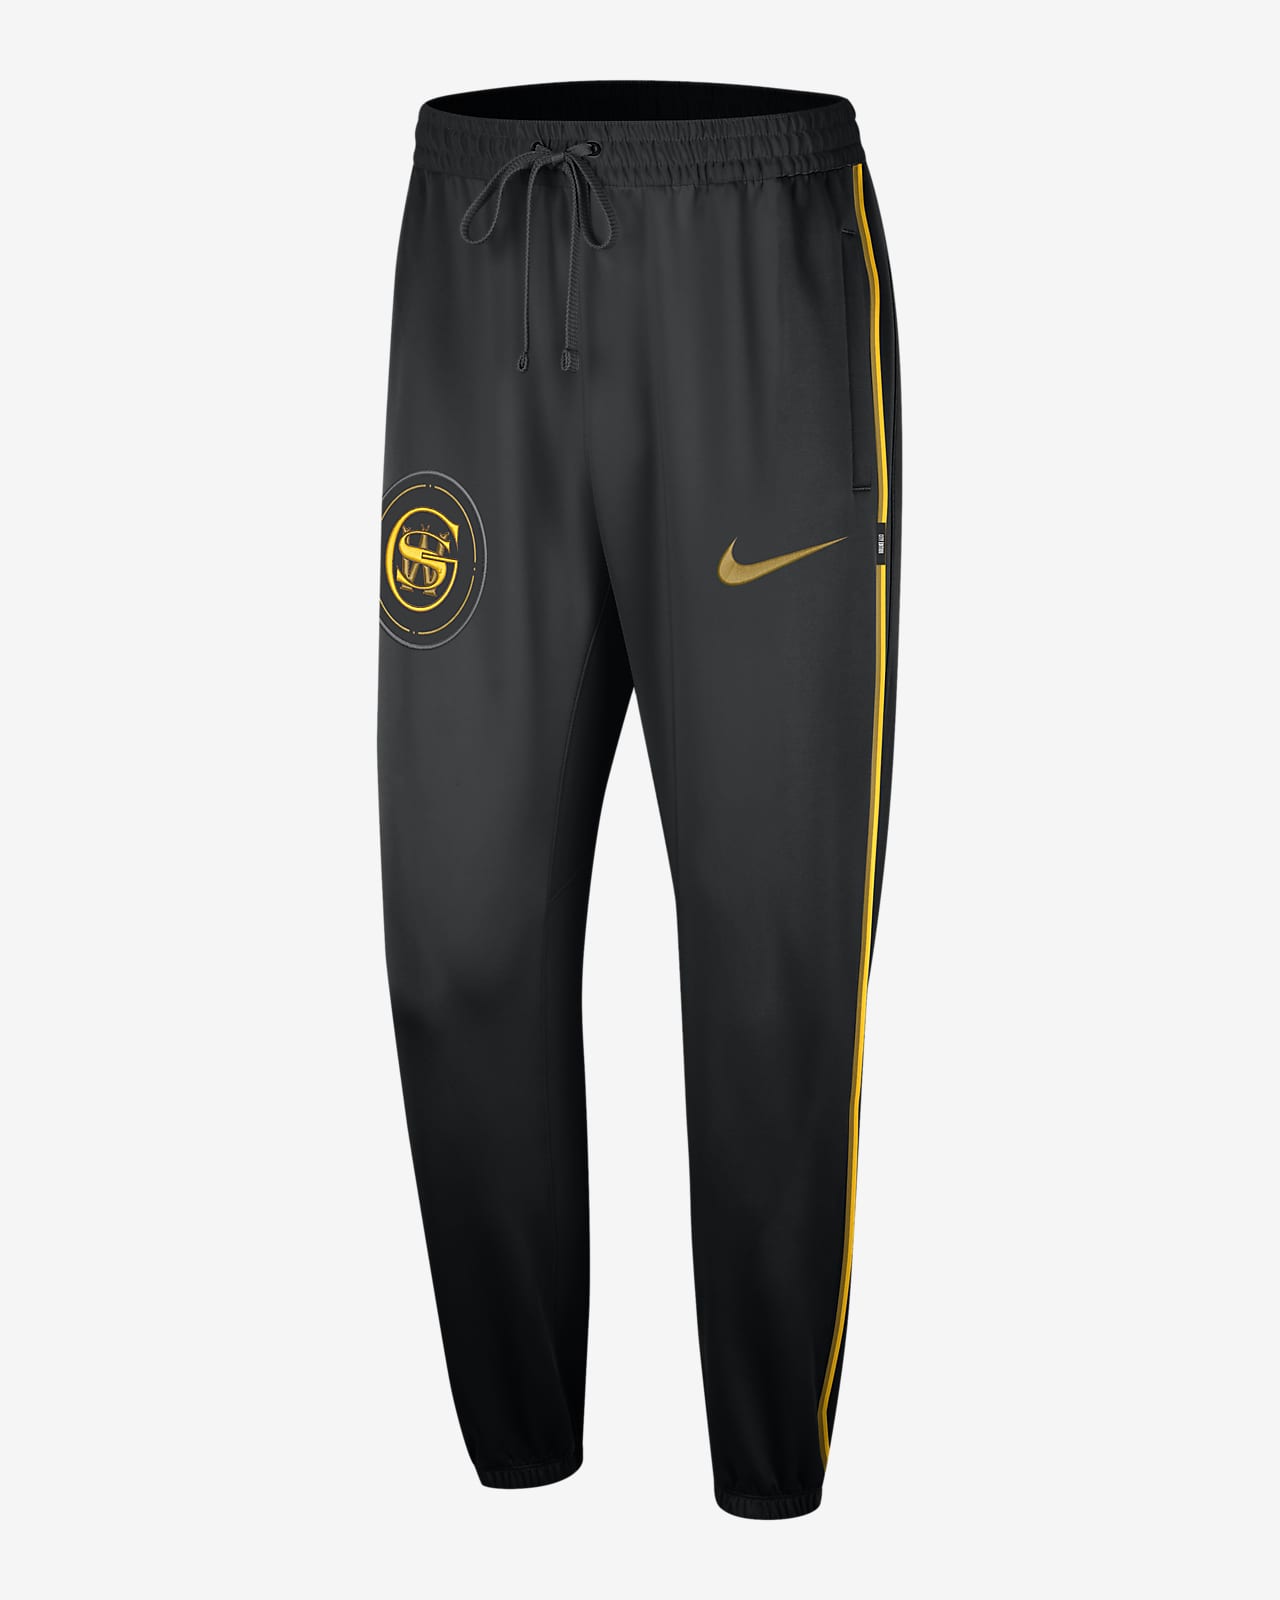 Ανδρικό παντελόνι Nike Dri-FIT NBA Γκόλντεν Στέιτ Ουόριορς Showtime City Edition